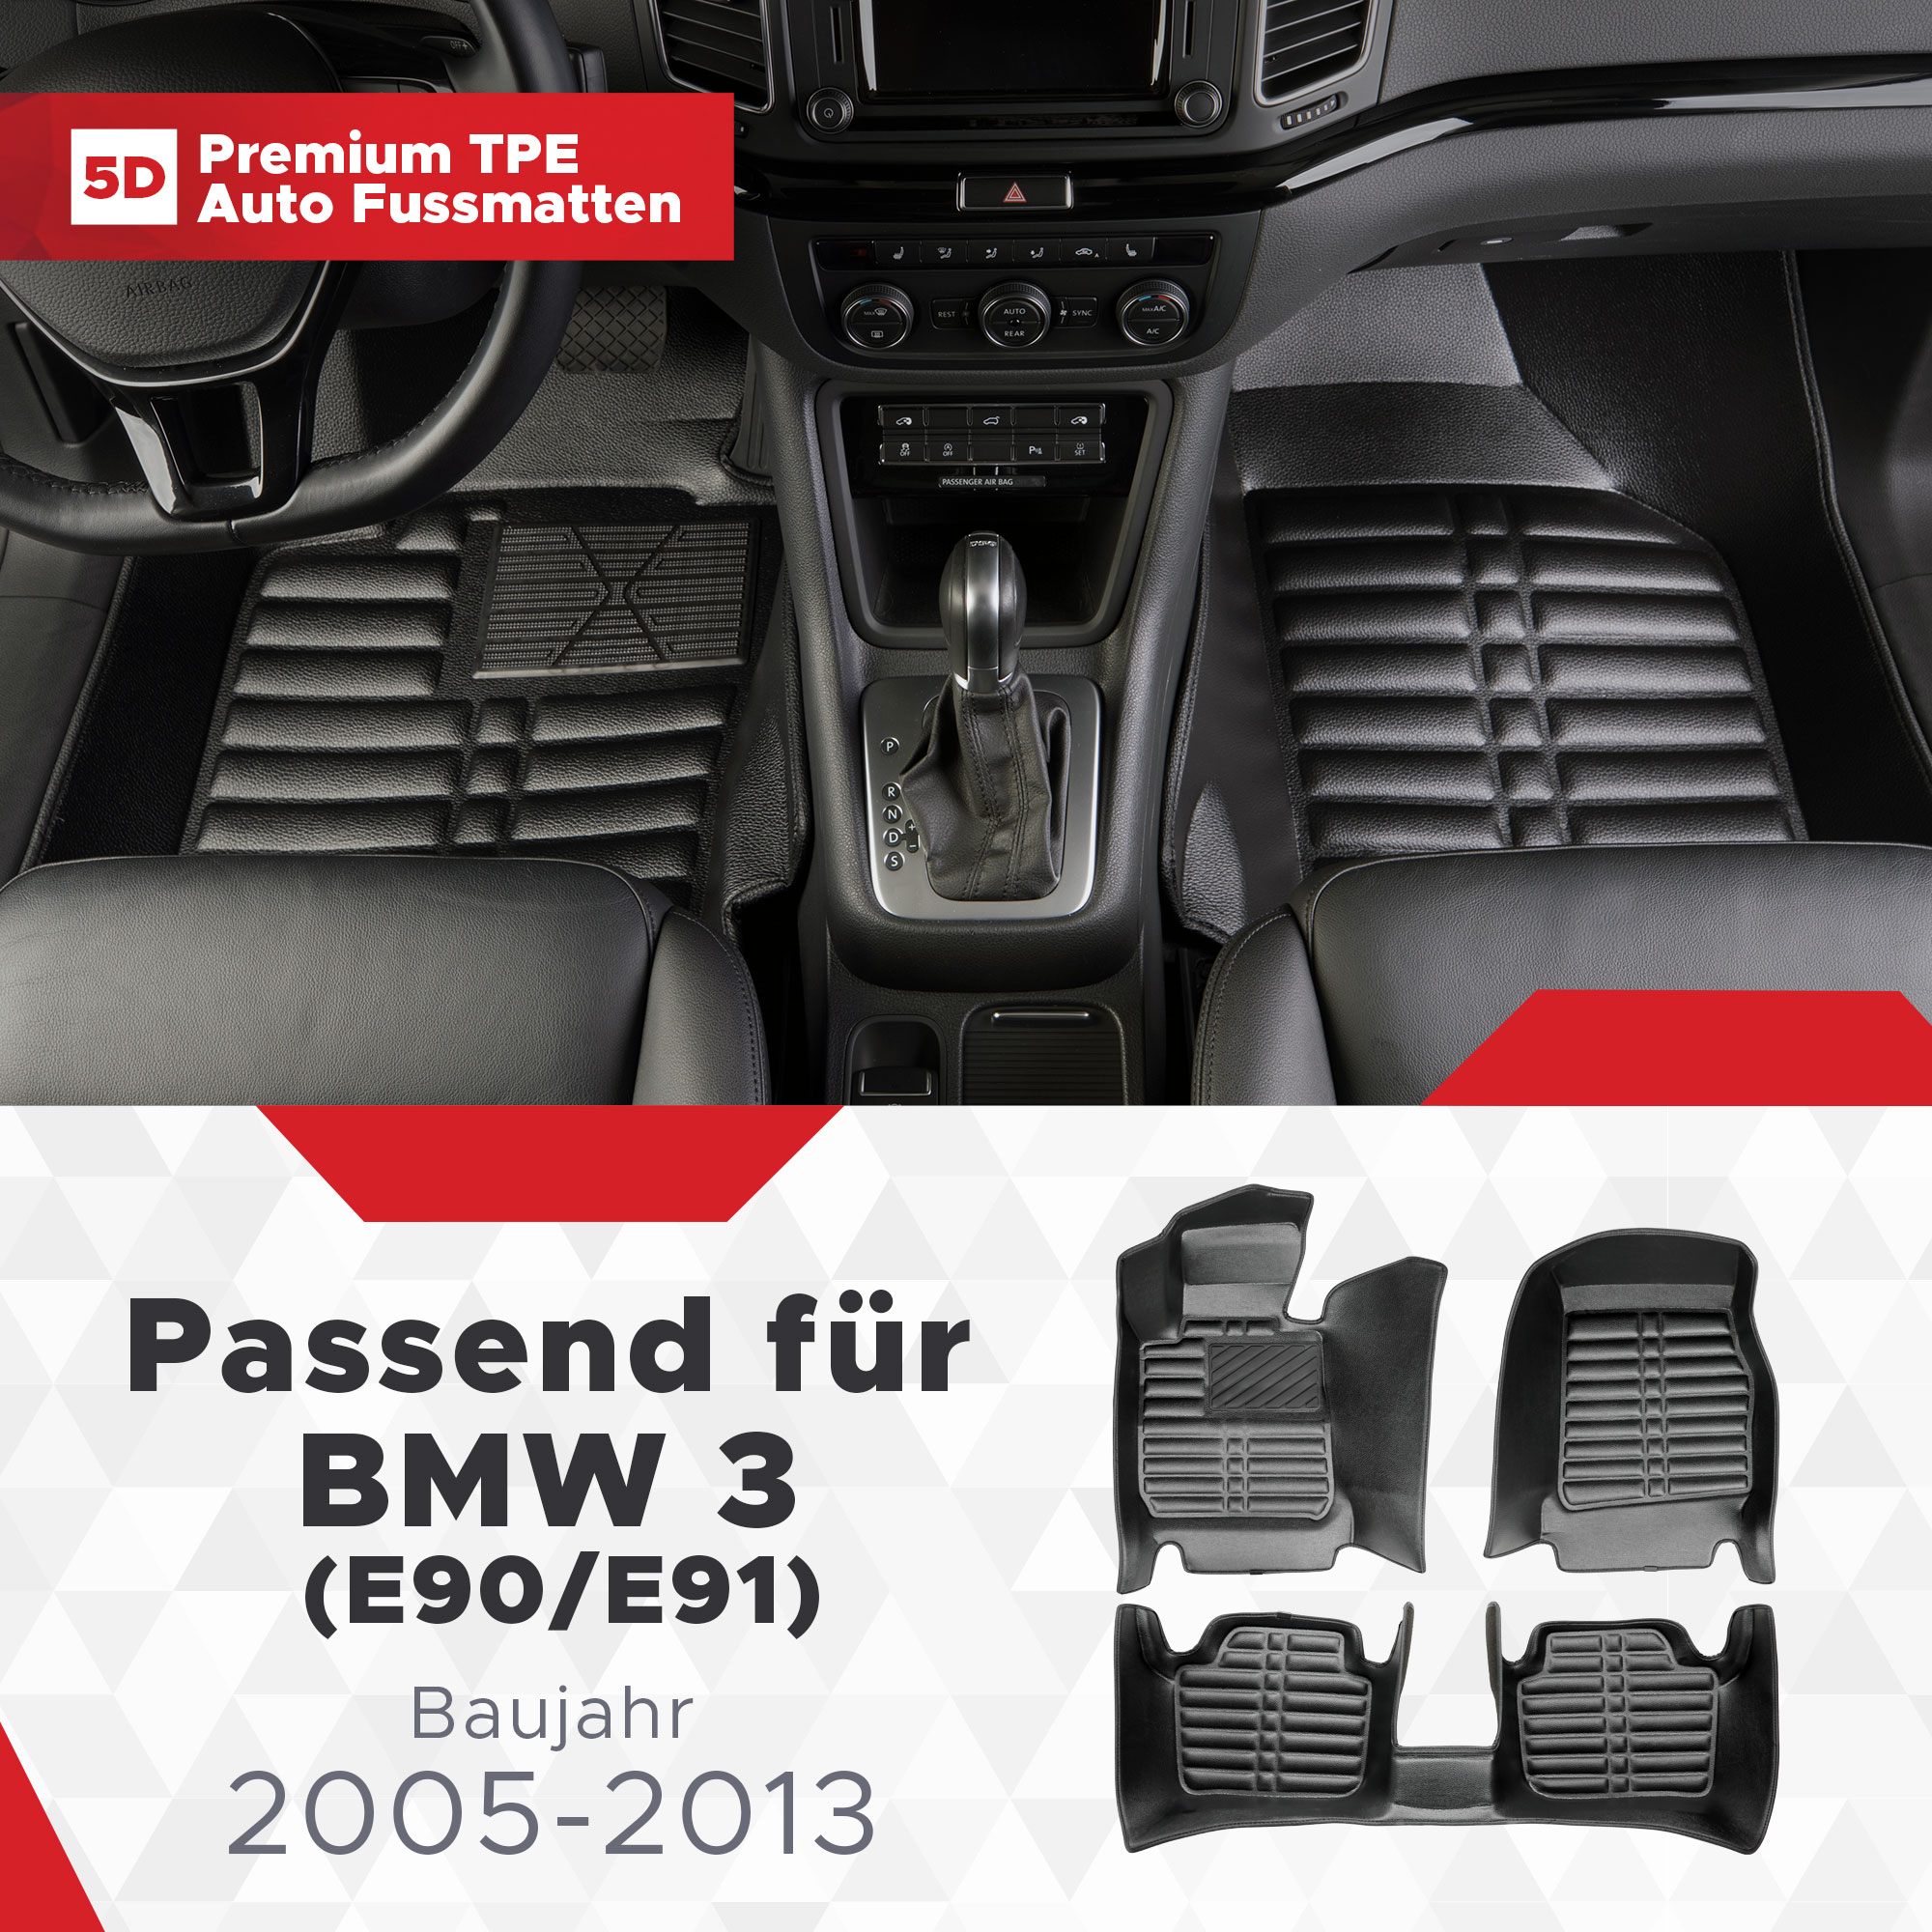 TPE BMW 5D 3 Bj (E90/E91) Fussmatten 2005-2013